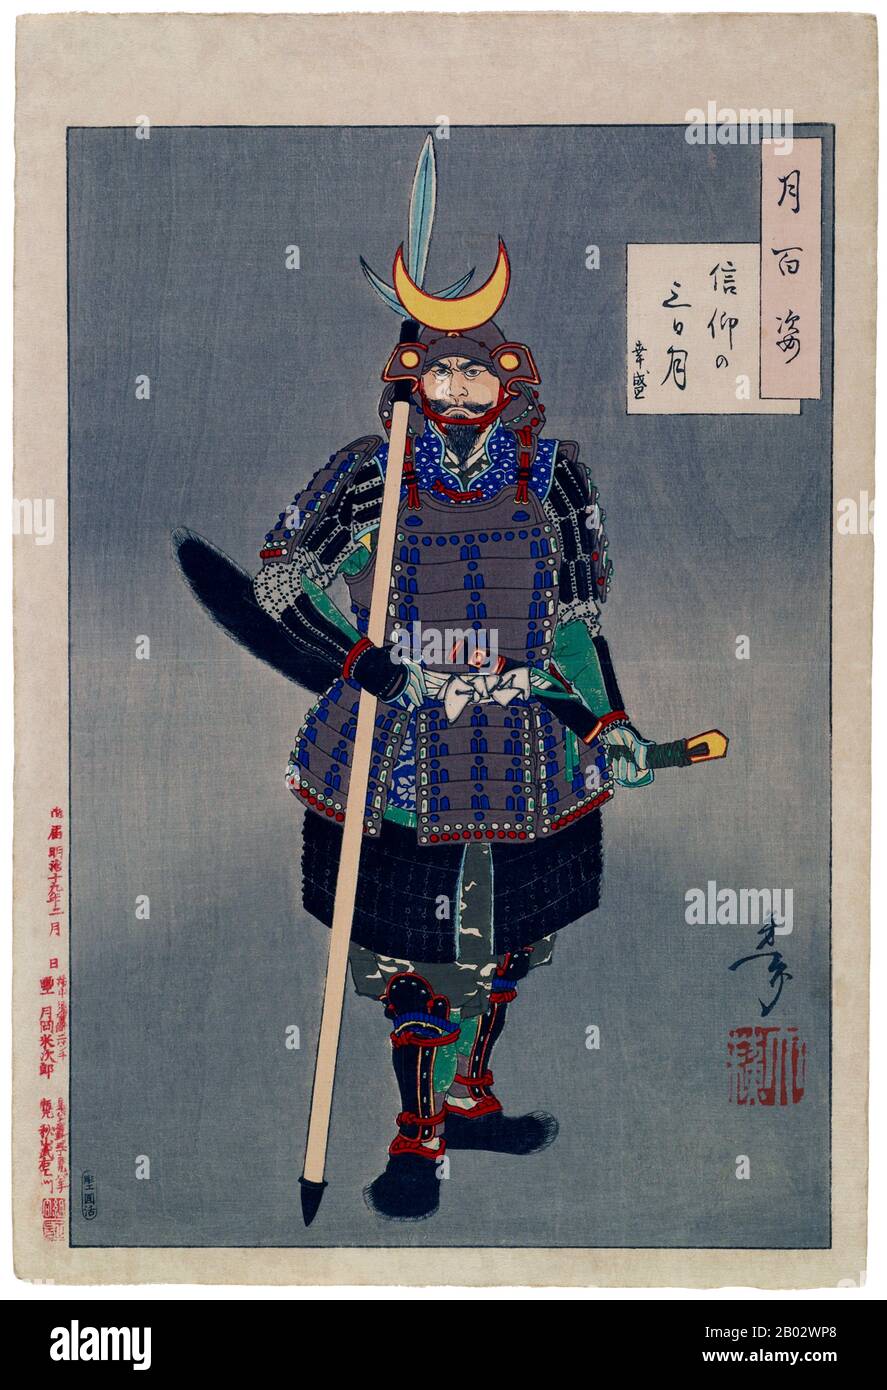 Tsukioka Yoshitoshi (Tsukioka Yoshitoshi, 30 aprile 1839 – 9 giugno 1892) è stato un . Yukimori (1543-76), un samurai conosciuto per la sua grande forza e lealtà, servì il Signore della guerra di Amako durante un periodo della storia giapponese chiamata 'Sengoku', o 'il paese in guerra'. Indossa un vestito di armatura chiamato 'tosei fazzoku' ('equipaggiamento moderno') che fu progettato nel 16th secolo per essere indossato da un soldato del piede. Foto Stock